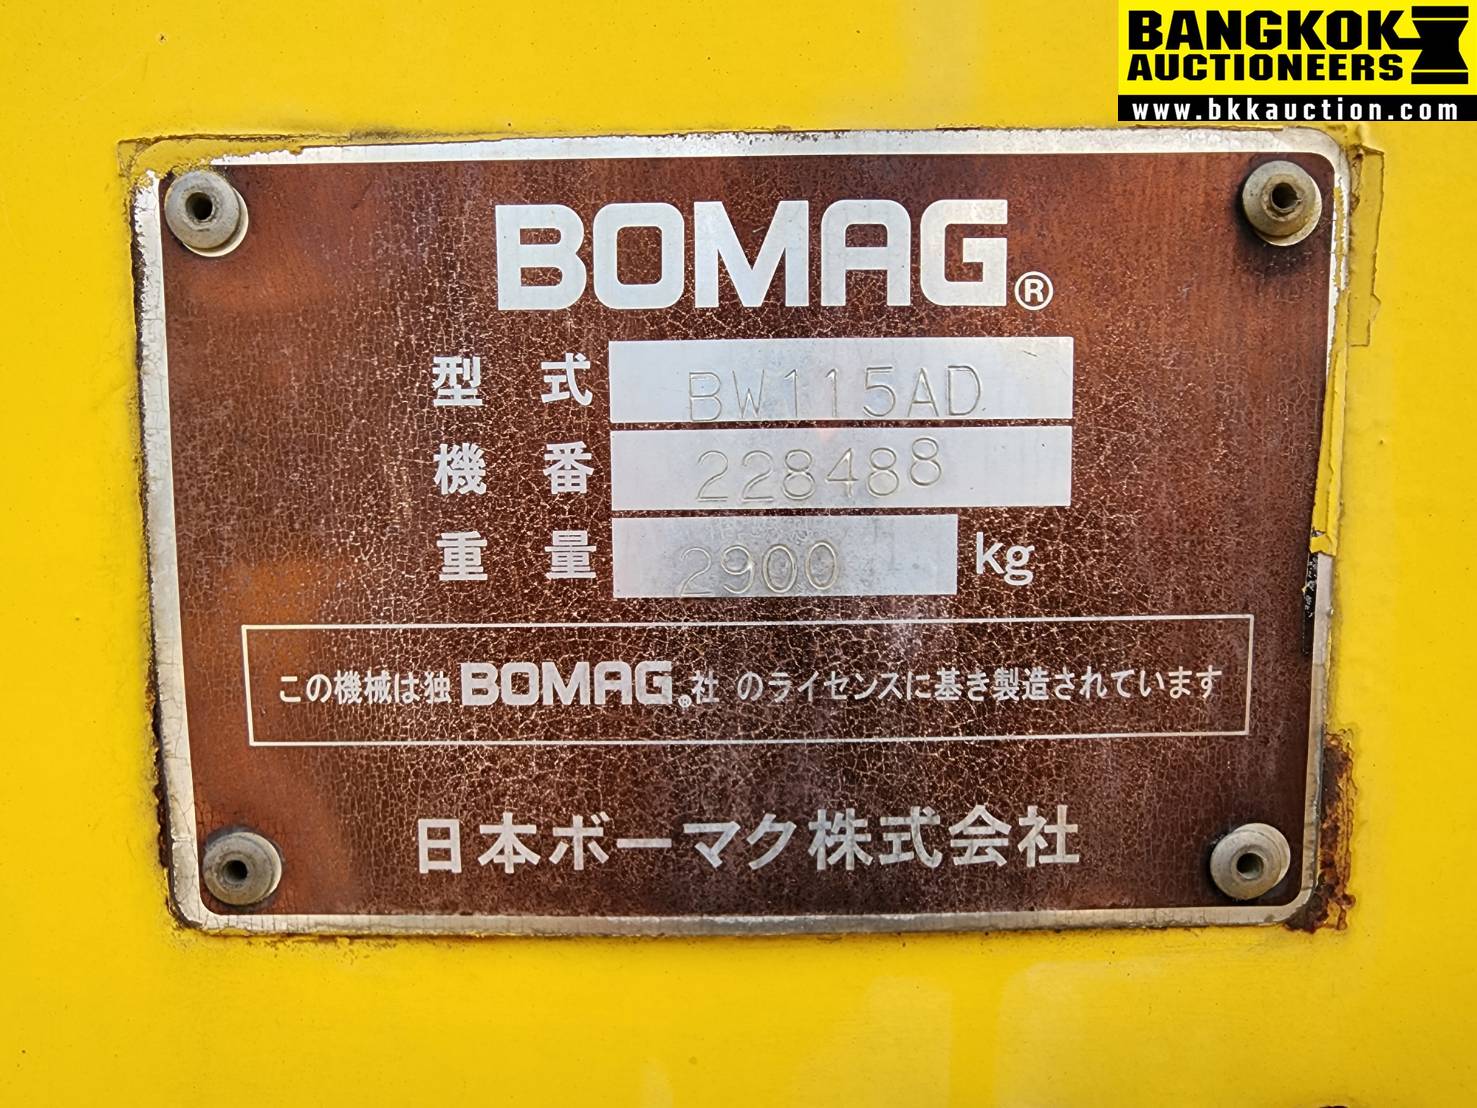 รถบดถนน BOMAG-BW115AD-228488